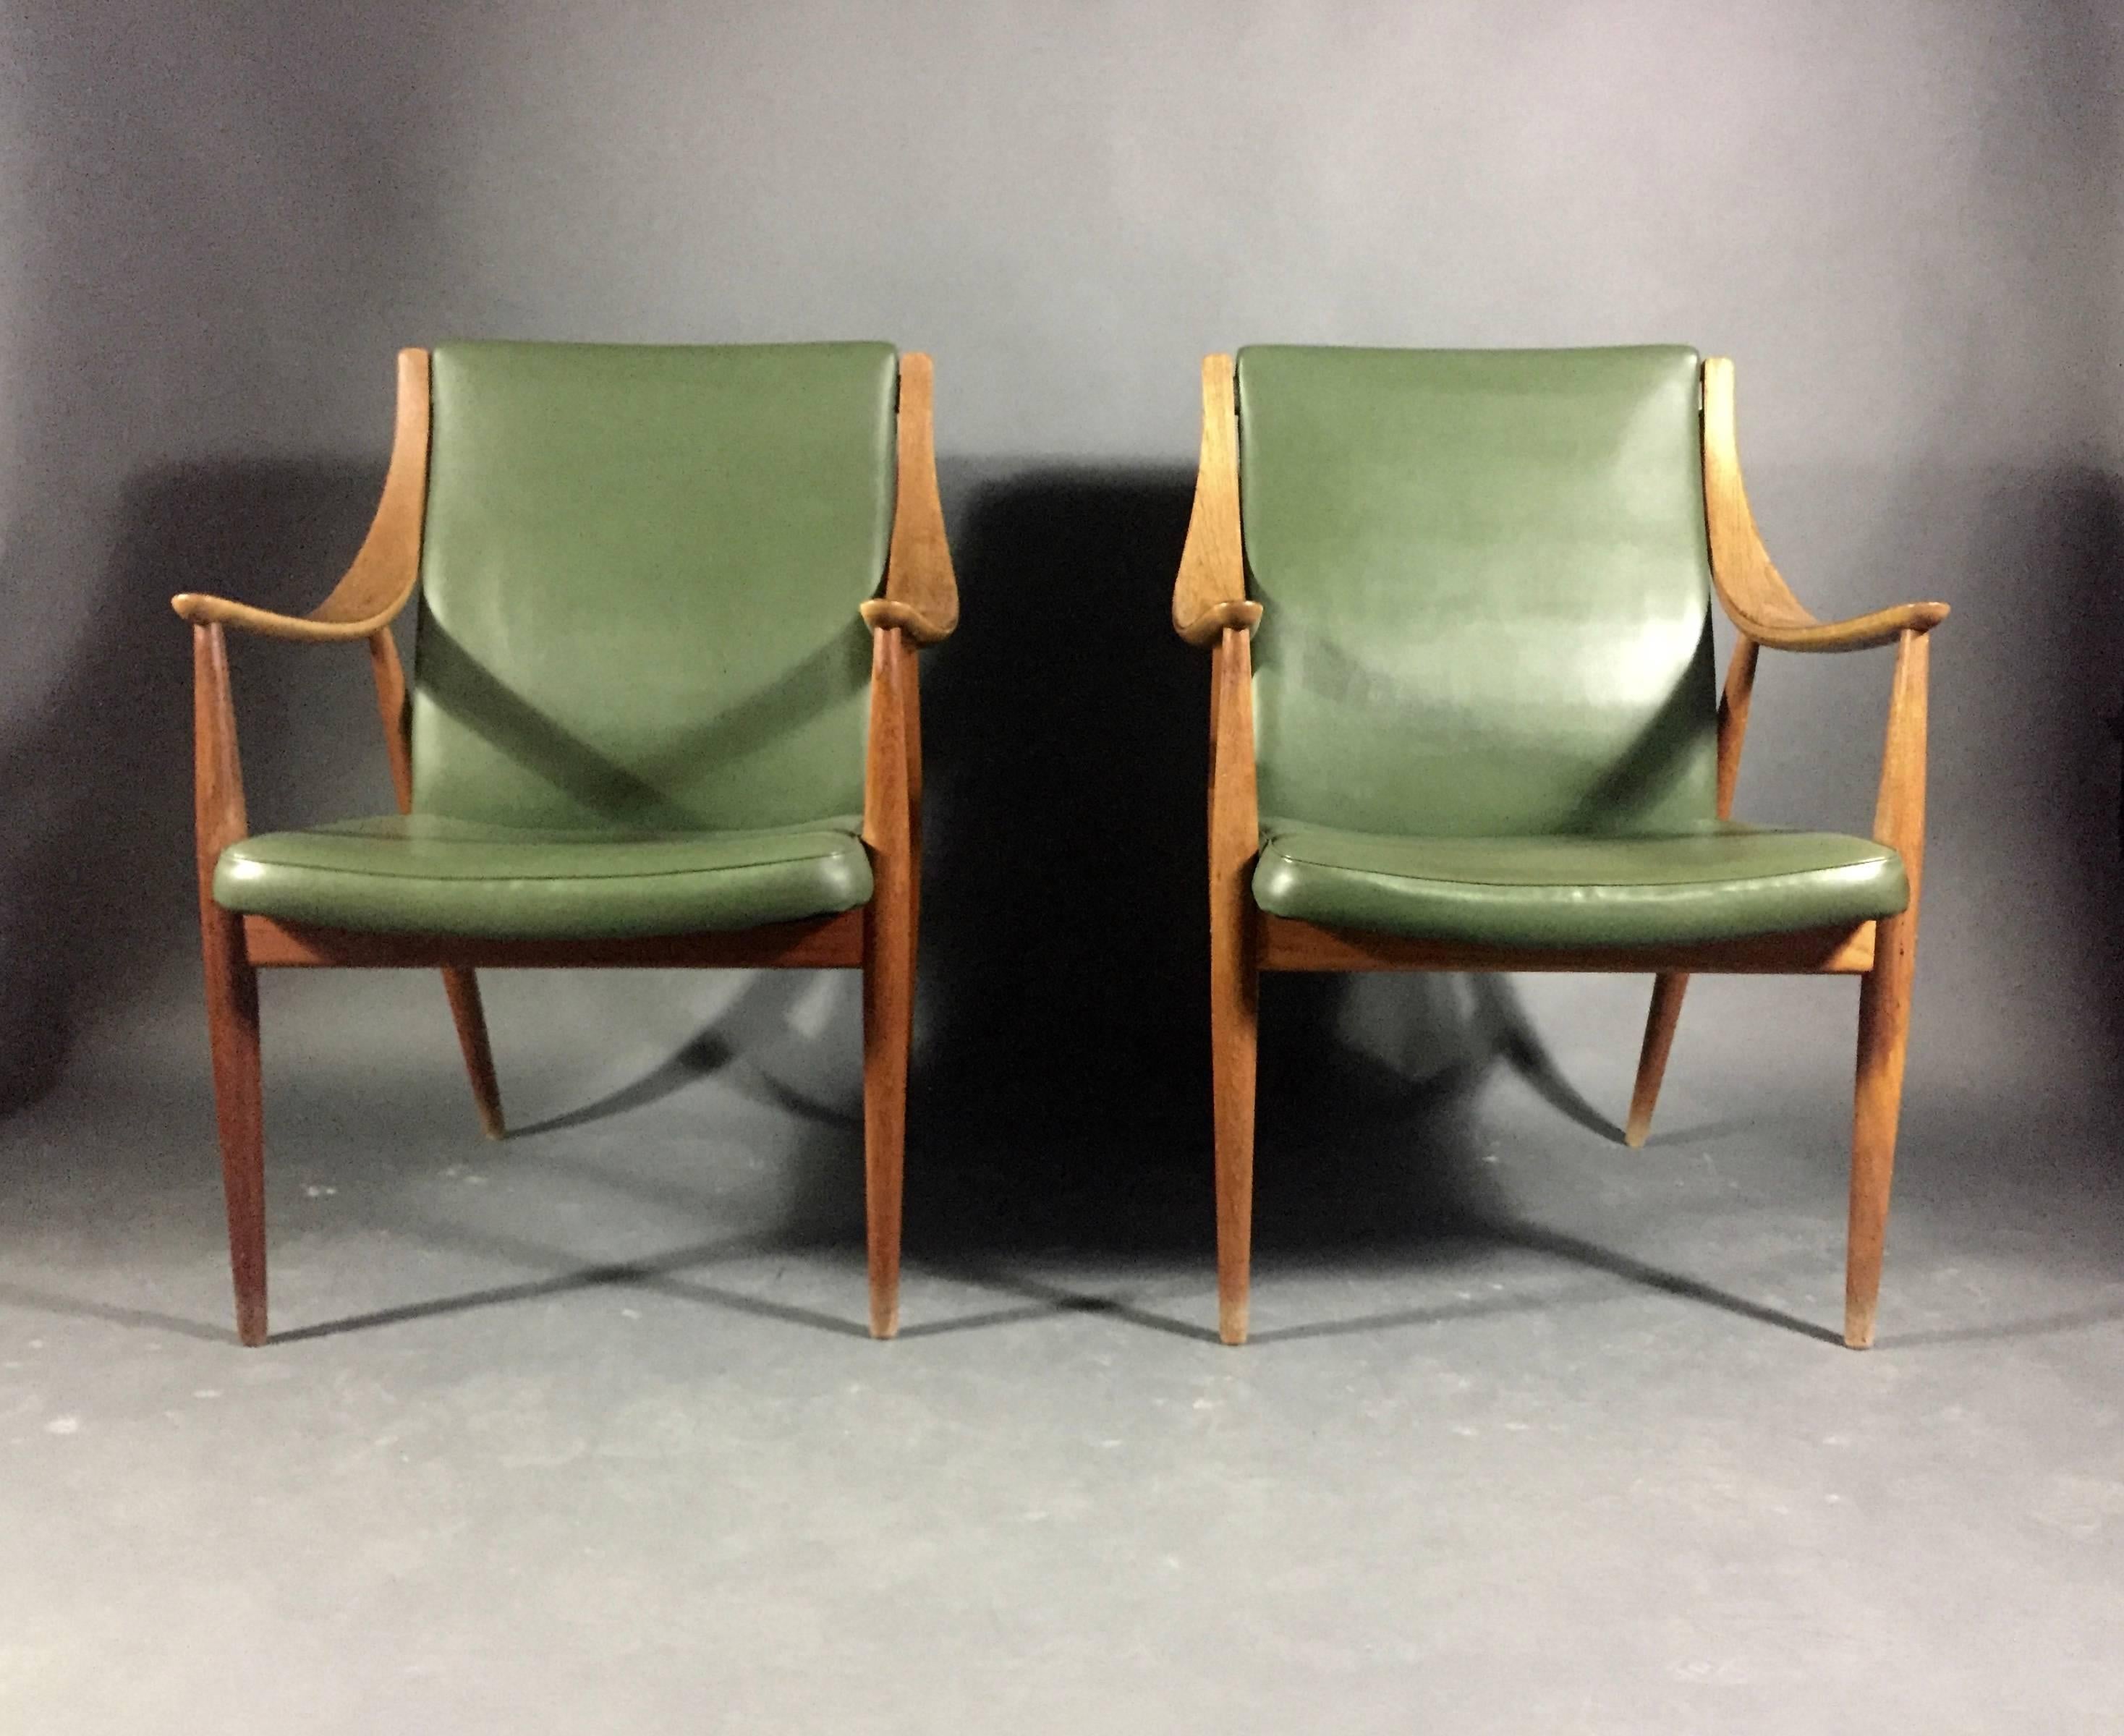 Scandinavian Modern Hvidt and Mølgaard-Nielsen Easy Chair, France & Søn, Denmark, 1953